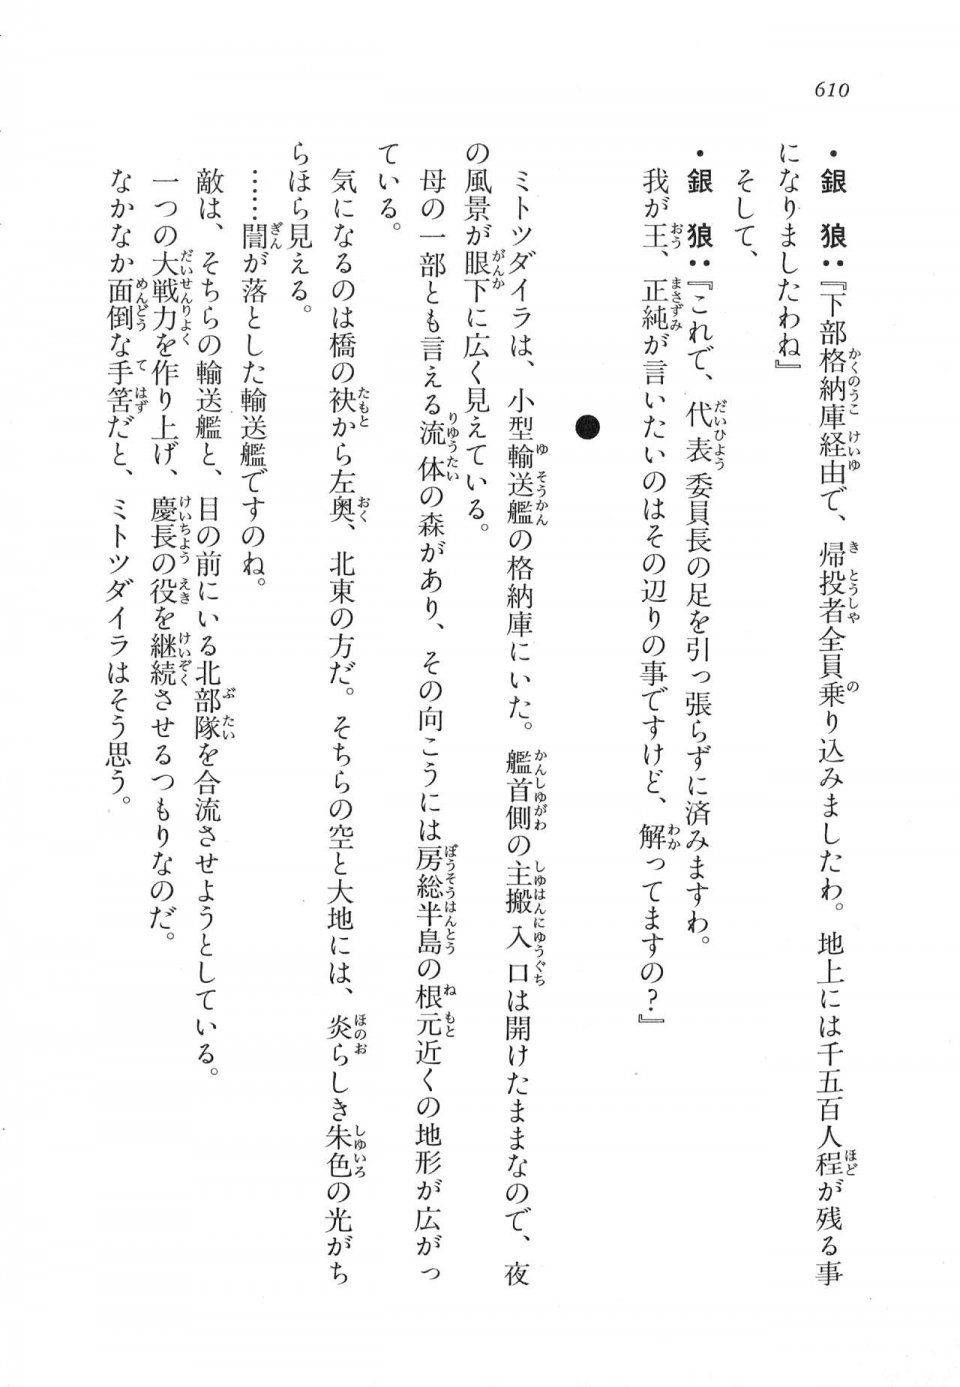 Kyoukai Senjou no Horizon LN Vol 17(7B) - Photo #612